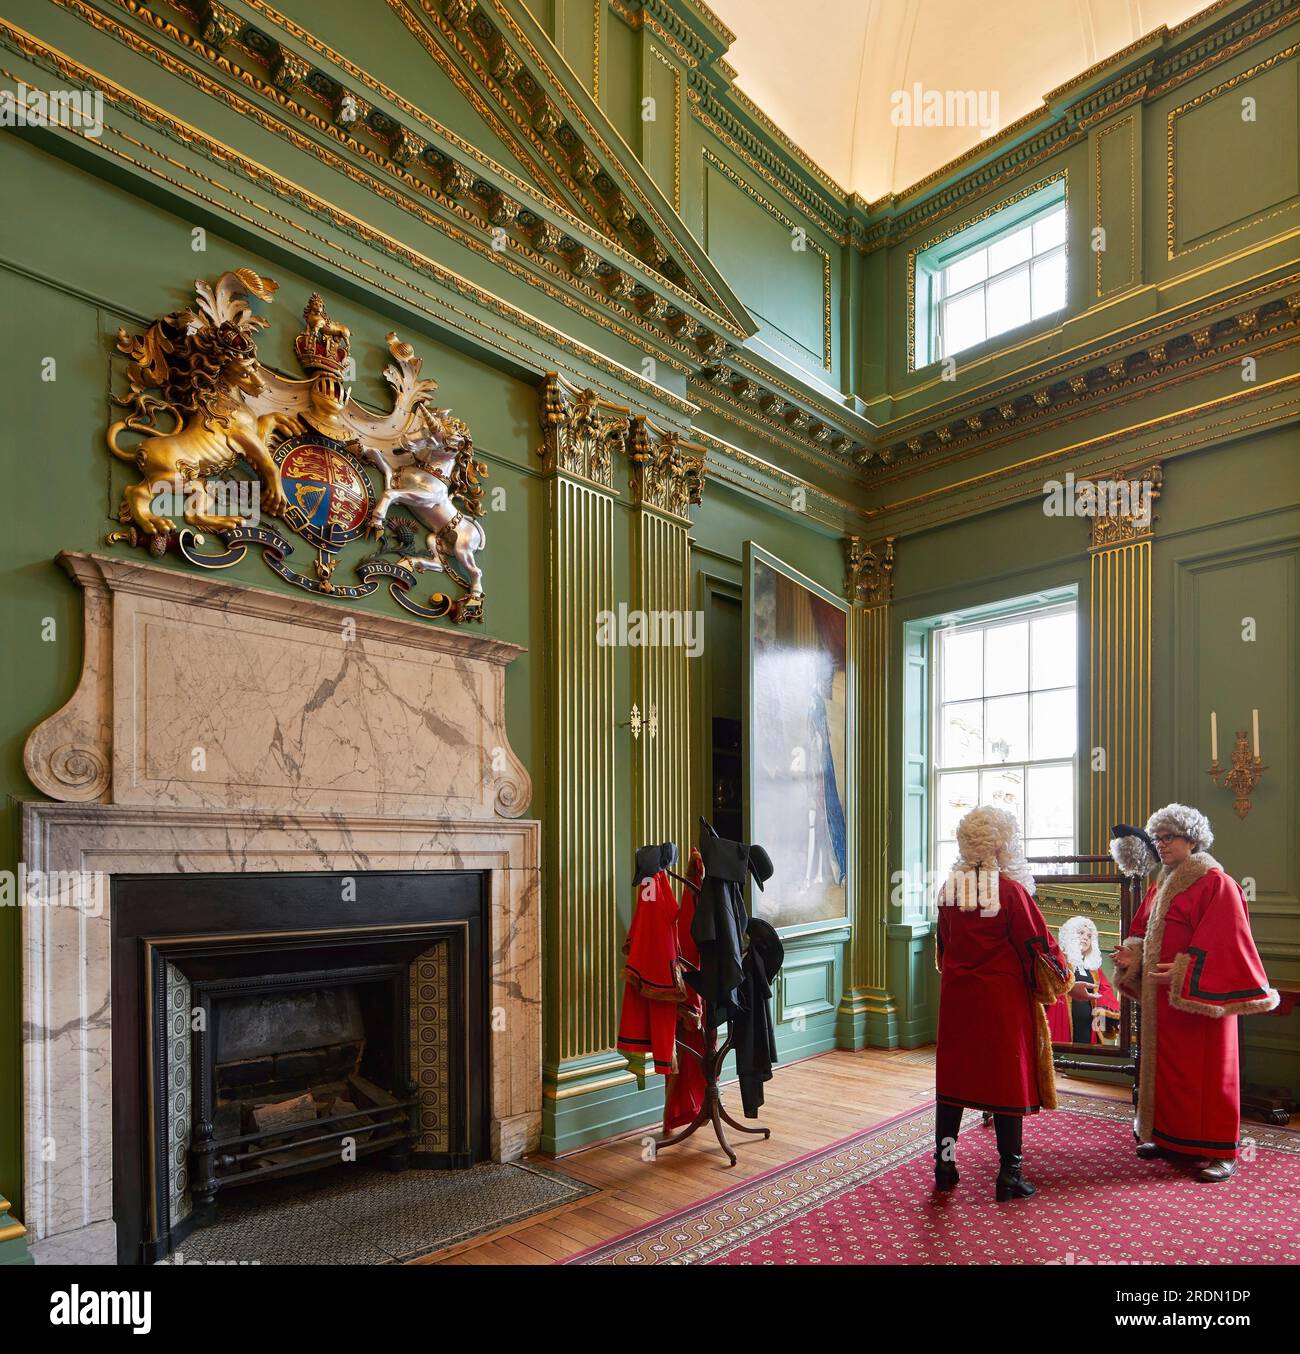 Rievocazione della scena storica in cabina. York Mansion House, York, Regno Unito. Architetto: De Matos Ryan, 2018. Foto Stock